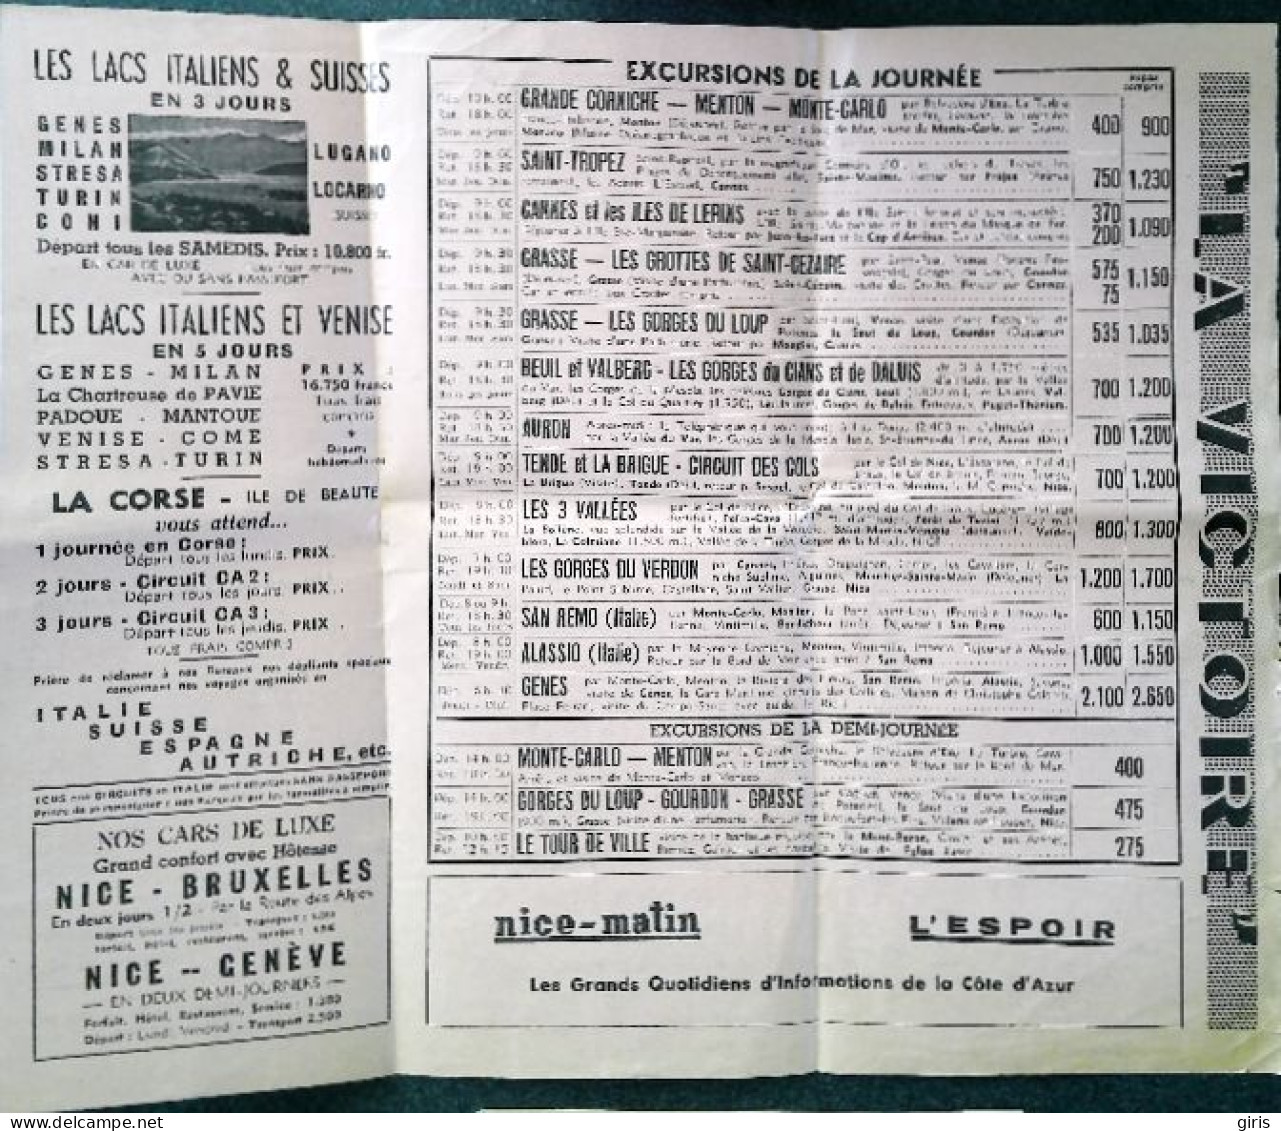 Vieux Papiers - Dépliants  - Excursions "La Victoire" - Nice Matin - L'Espoir - Saison 1952 - Toeristische Brochures